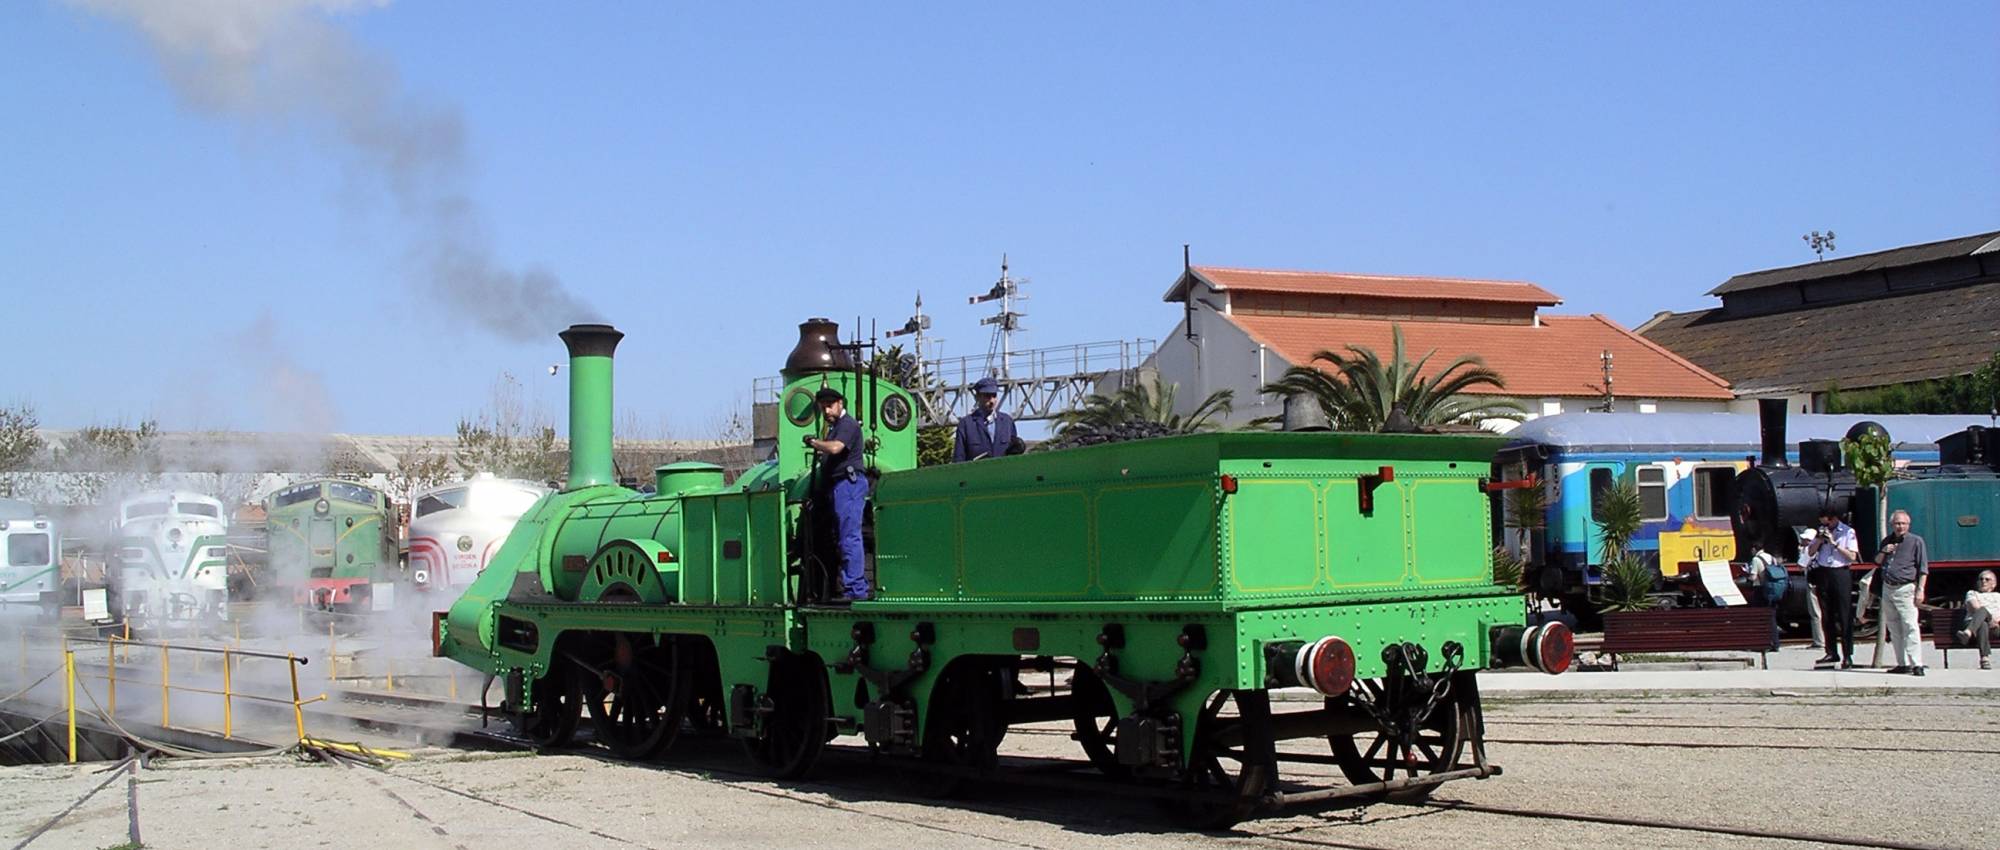 Tren del Centenari 1848-1948 del Museu del Ferrocarril de Vilanova i la Geltrú. Nils Öberg / Wikimedia Commons. CC BY-SA 3.0